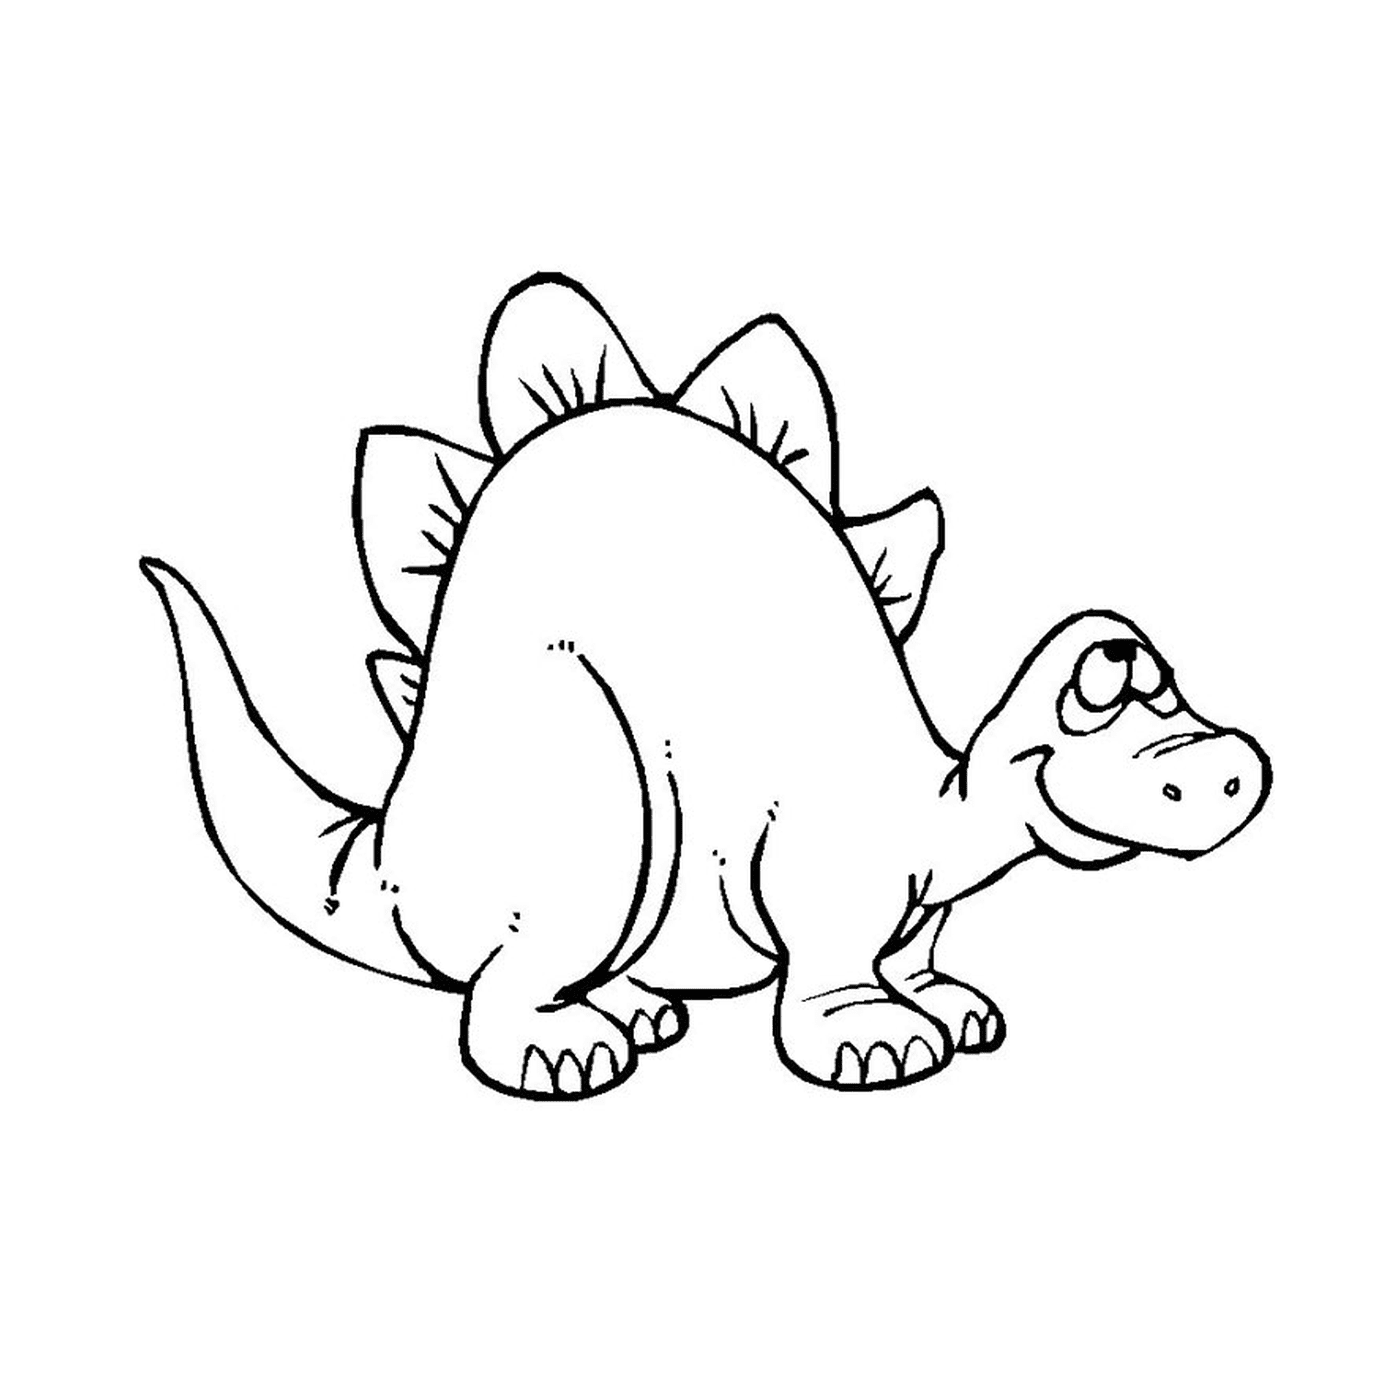  Uno stegosauro 